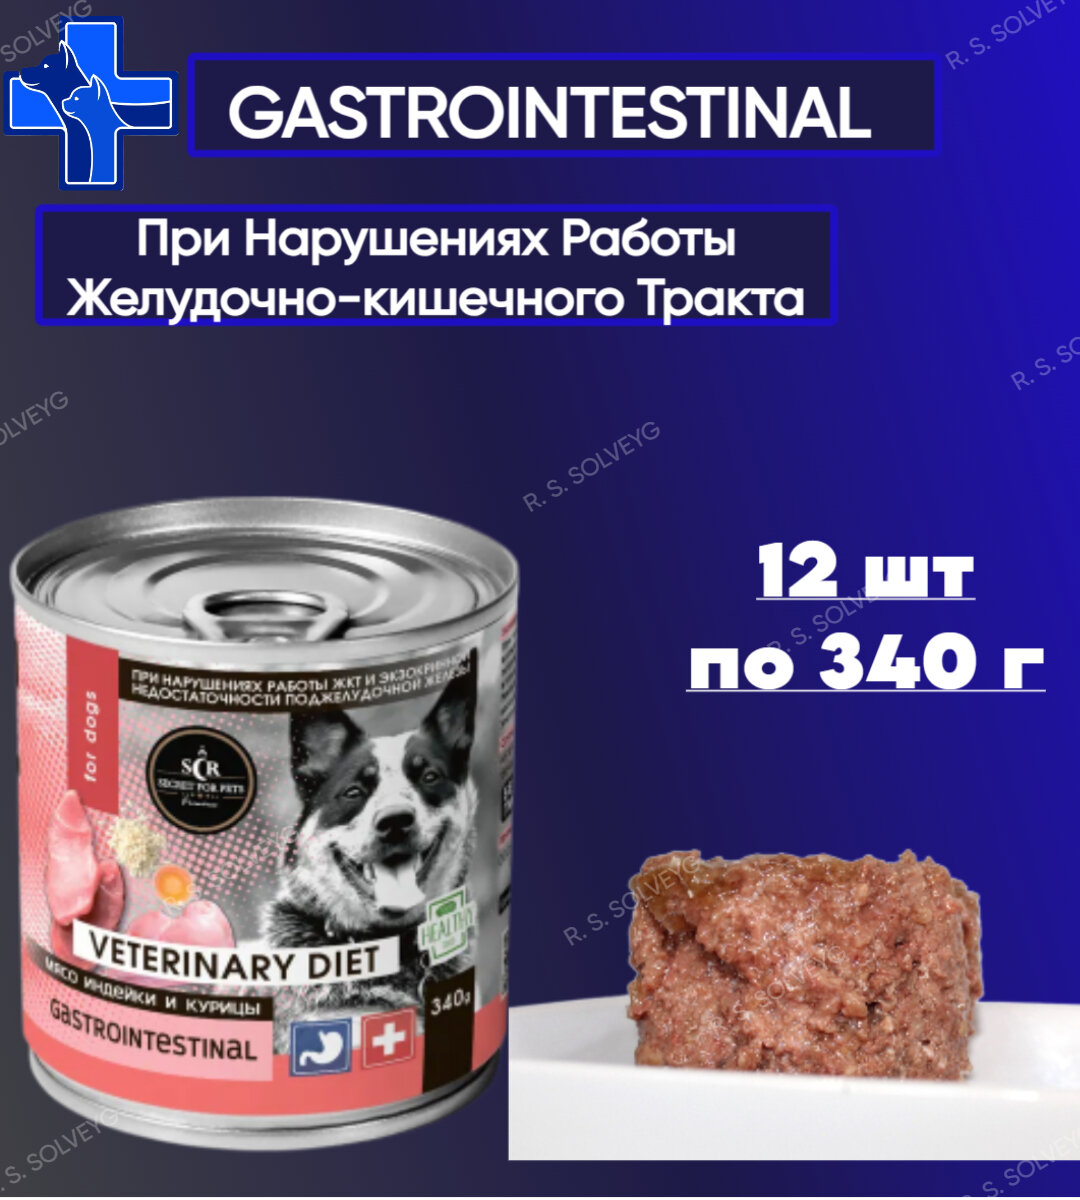 Консервы для собак Secret Premium Gastrointestinal мясо индейки и курицы, влажный корм, упаковка 12шт х 340г